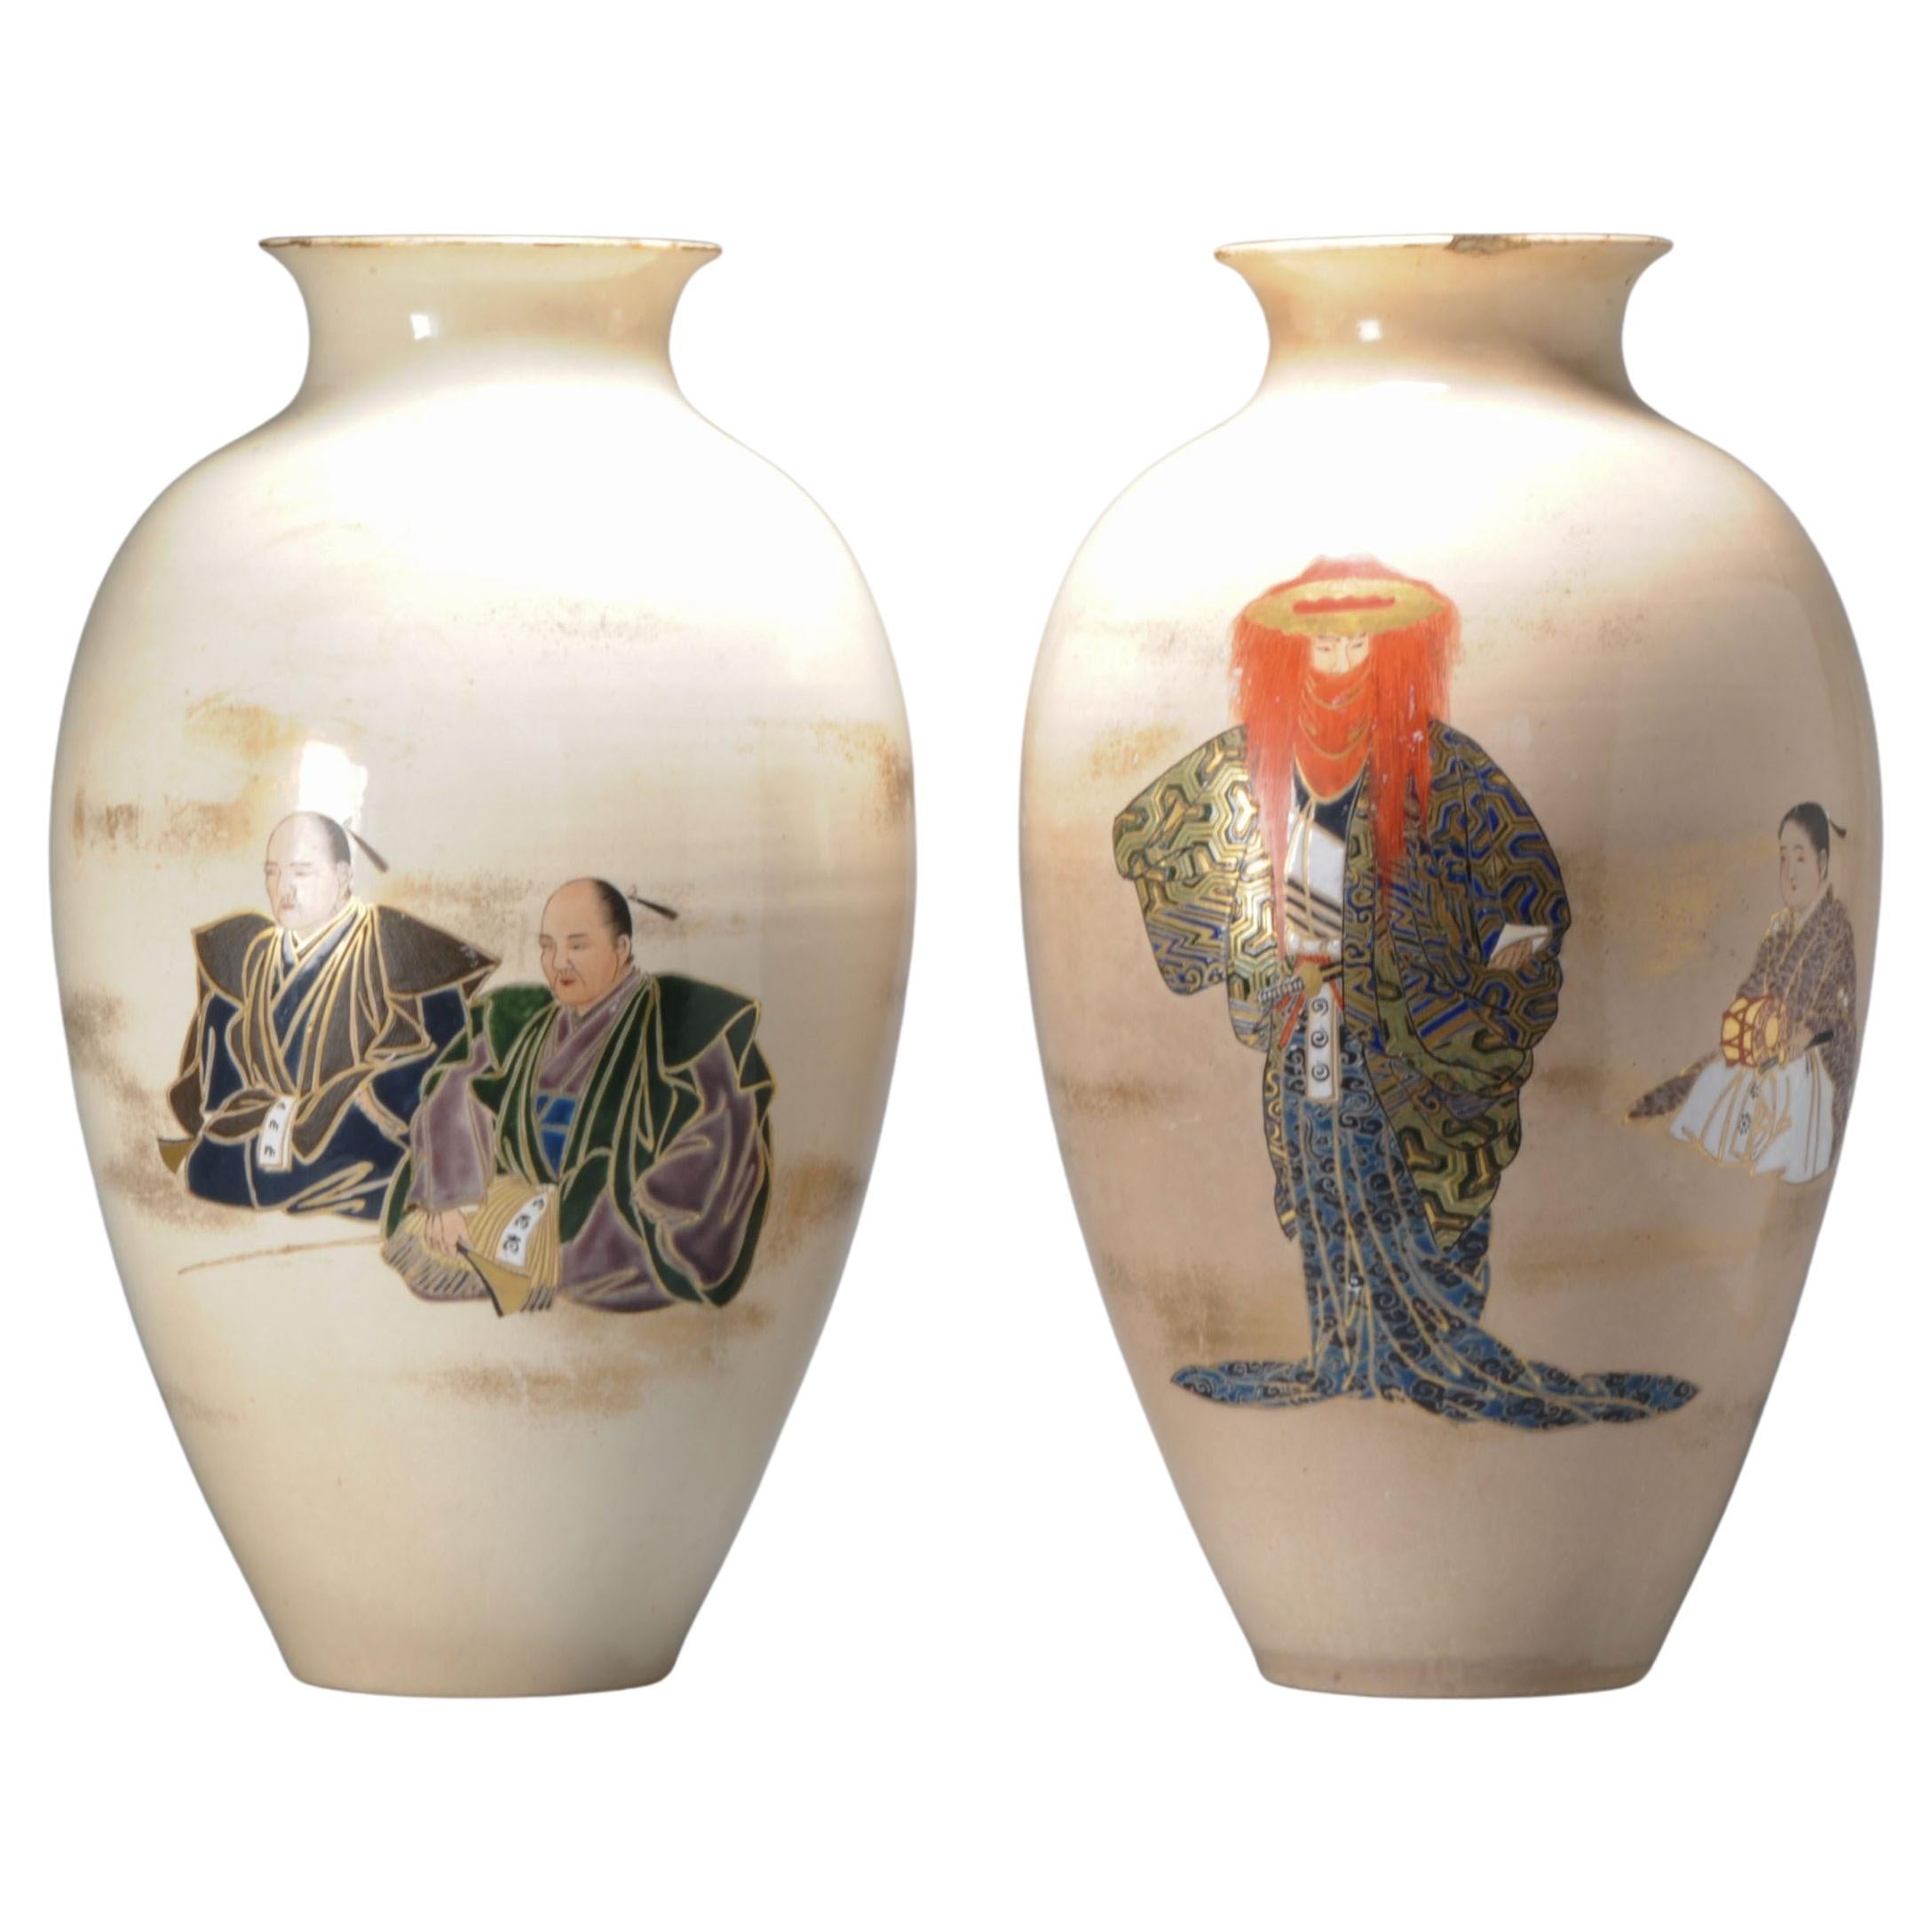 Grands vases japonais anciens Satsuma de la période Meiji, non marqués mais reçus